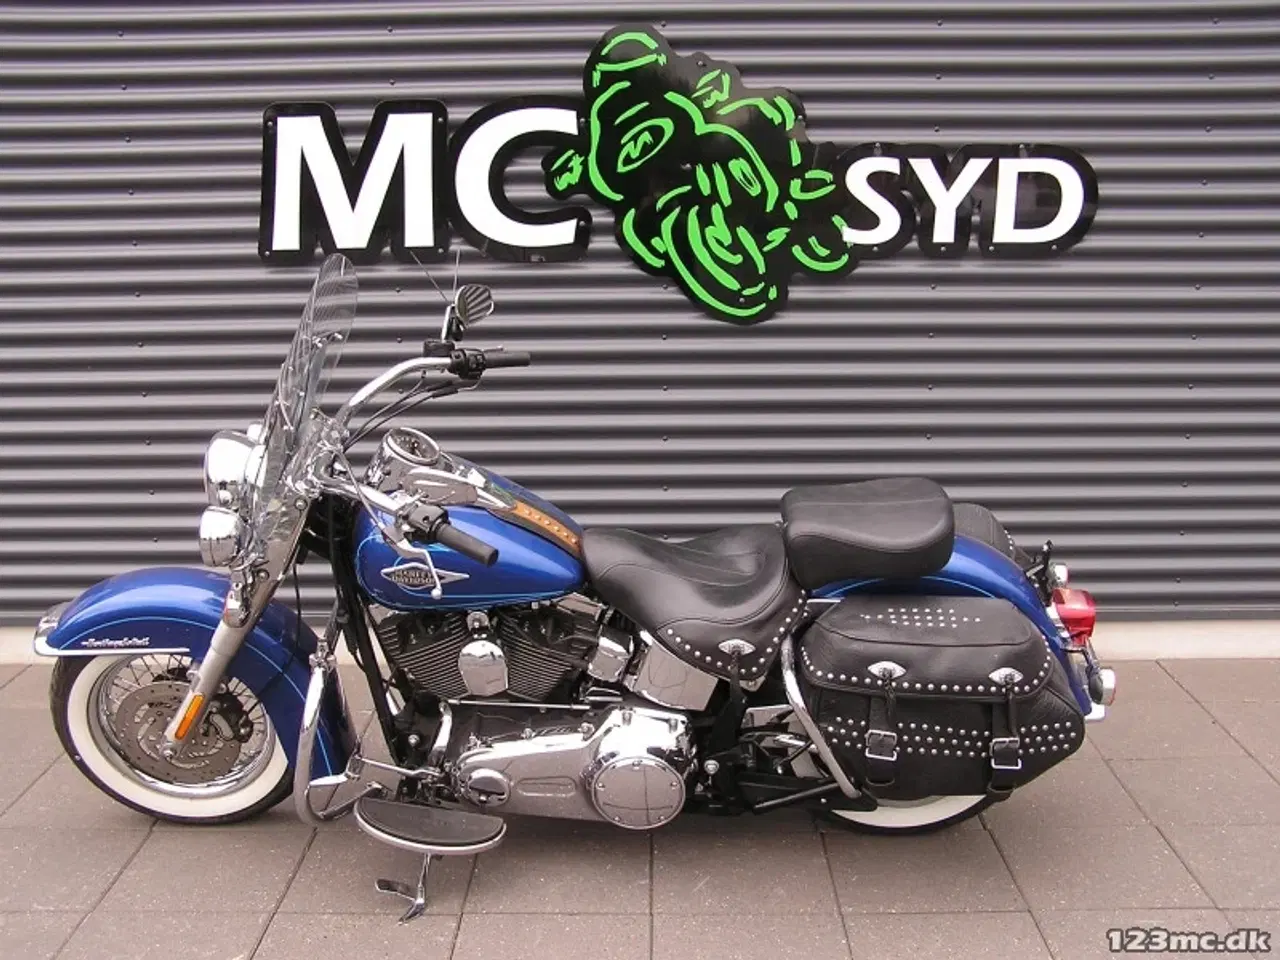 Billede 12 - Harley-Davidson FLSTC Heritage Softail Classic Mc-Syd Bytter gerne